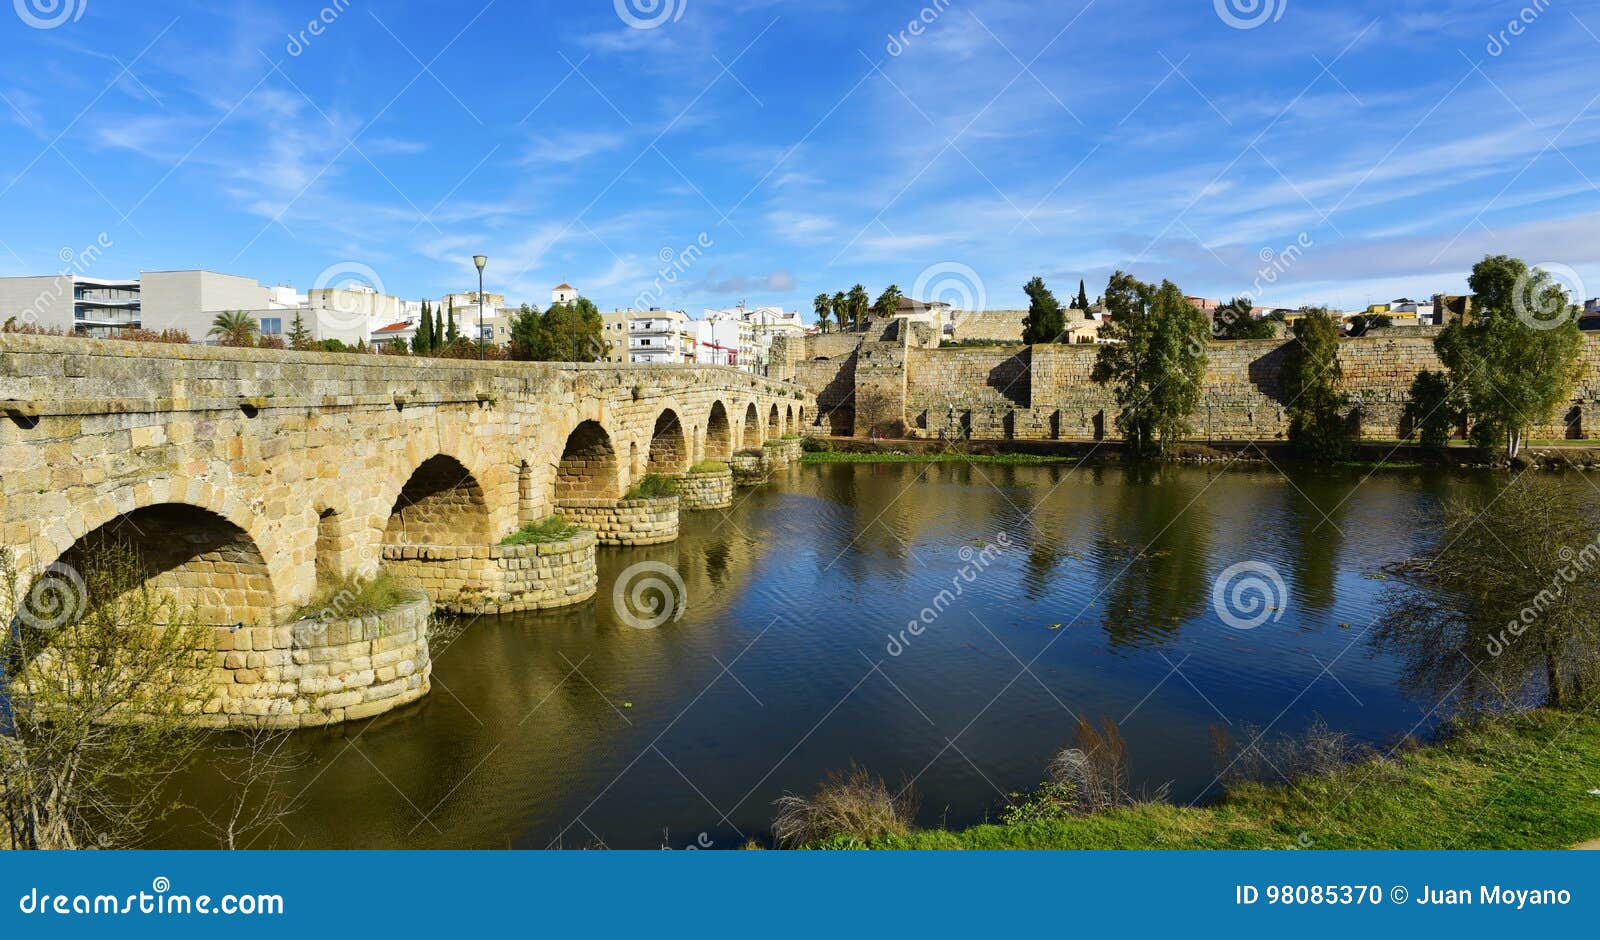 puente romano bridge in merida, spain